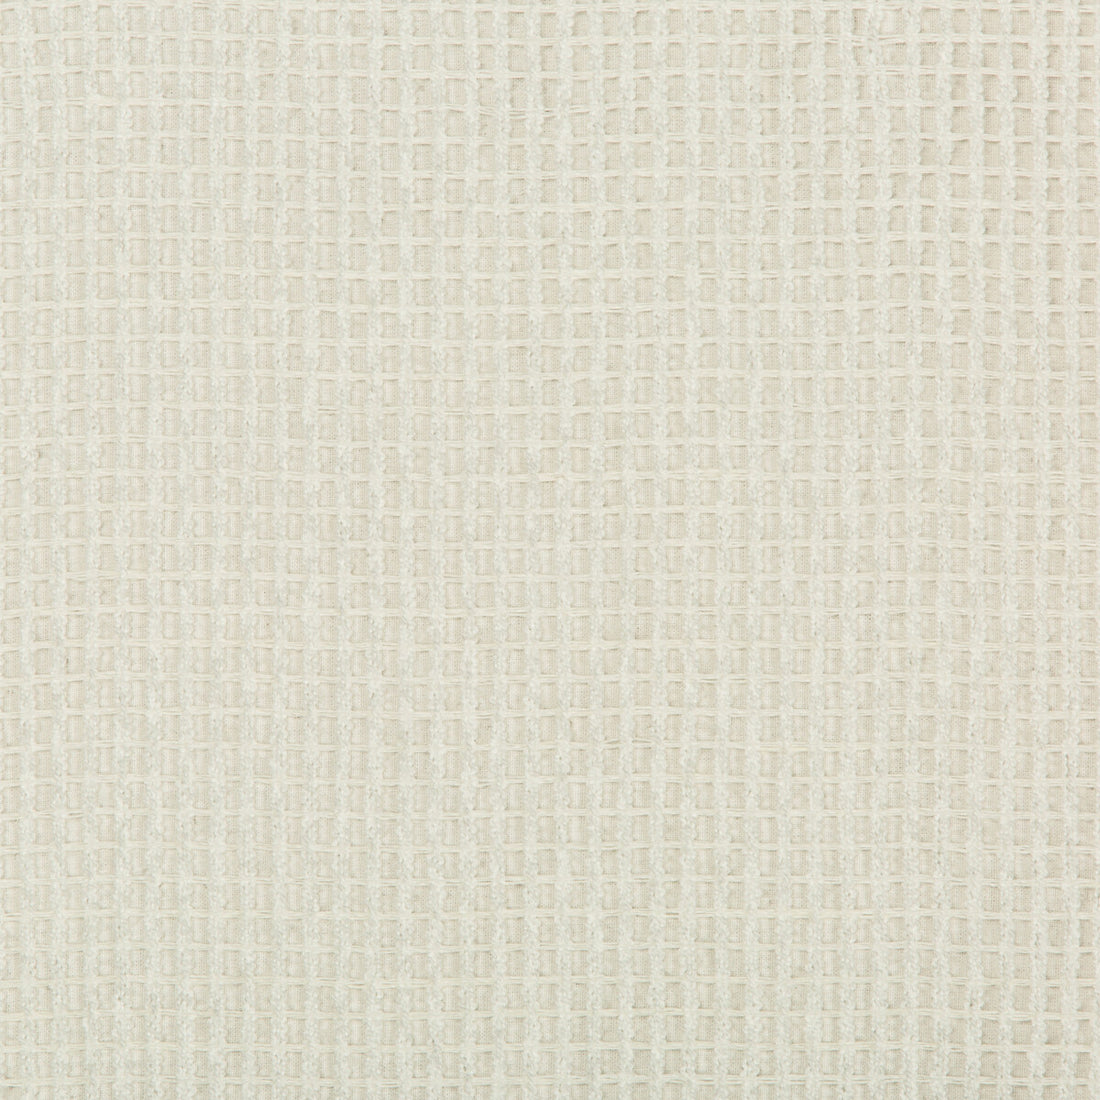 Kravet Design fabric in 4600-1 color - pattern 4600.1.0 - by Kravet Design